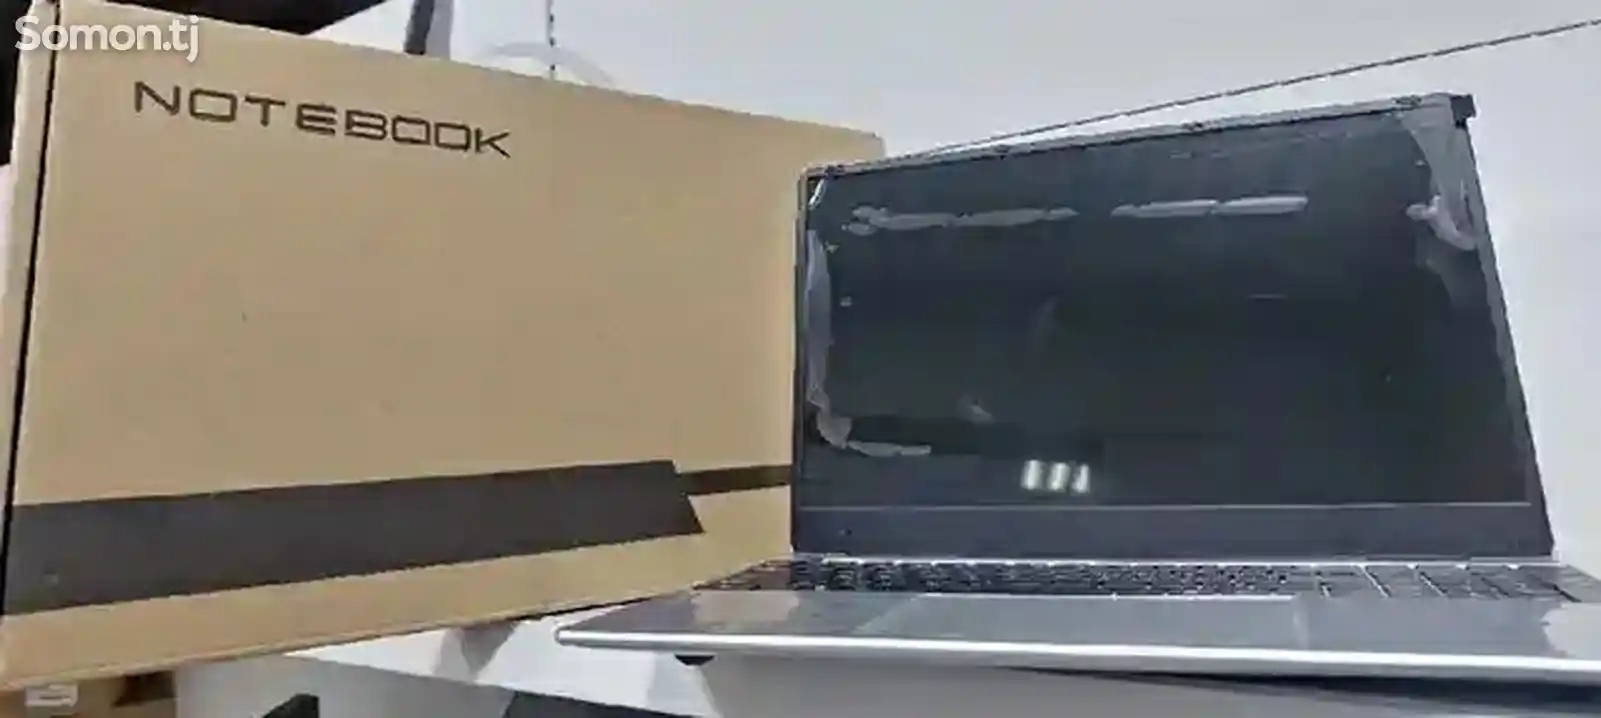 Ноутбук Notebook ультра-тонкий-1